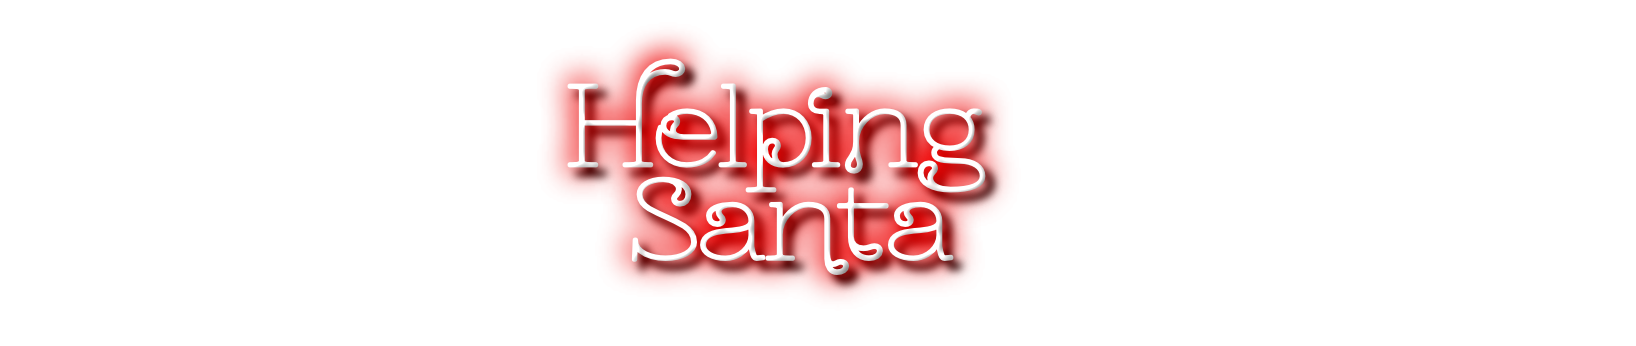 Helping Santa